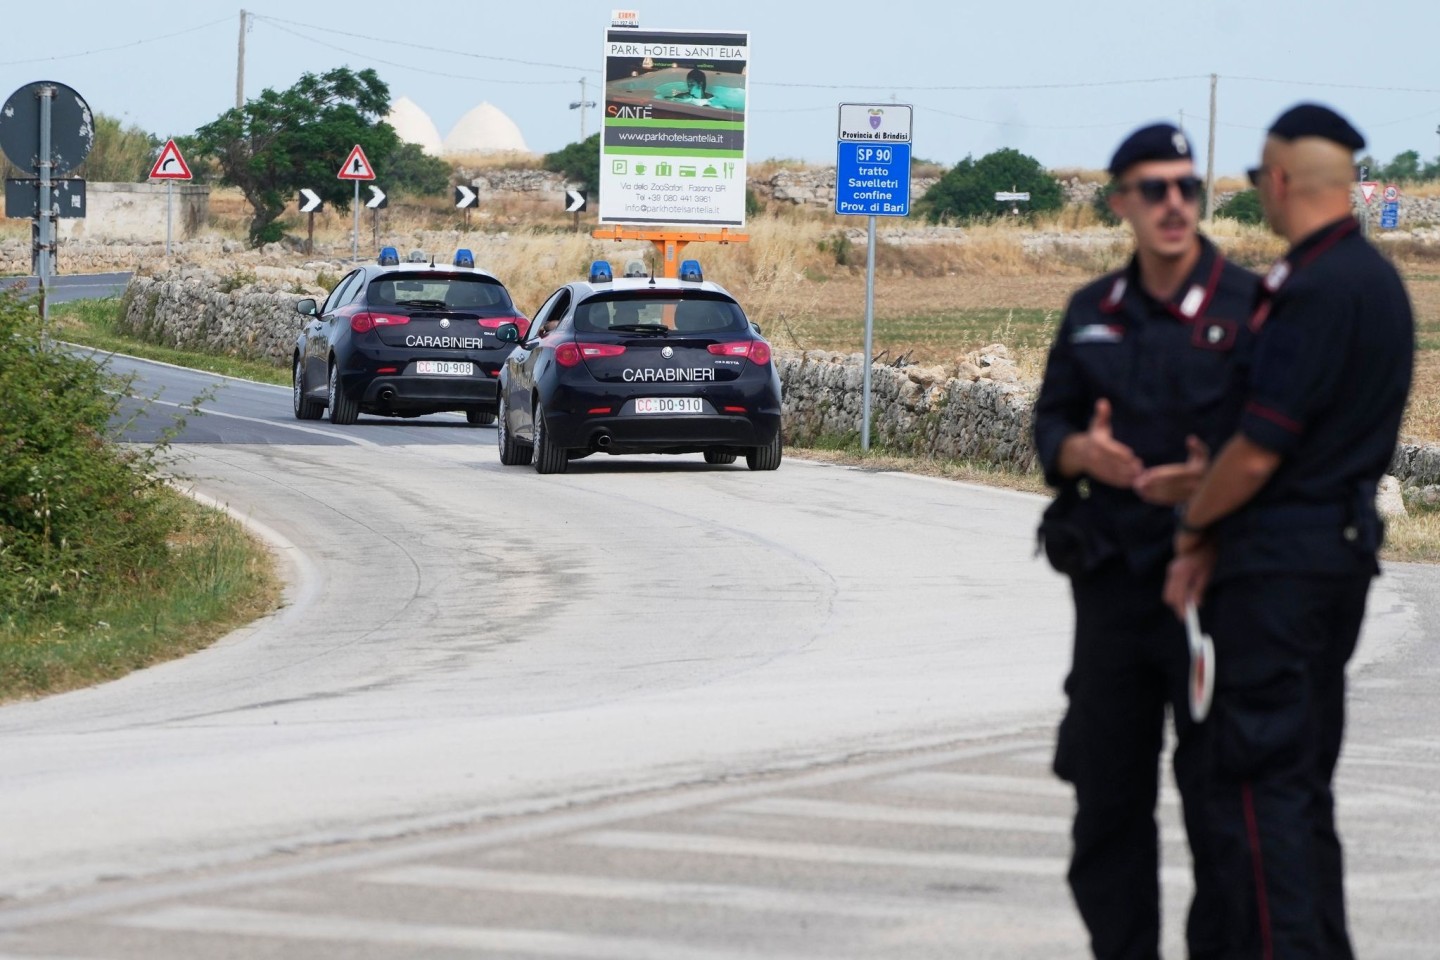 Bei einem Überfall auf einen Geldtransporter nahe Brindisi machte ein bewaffnetes Kommando drei Millionen Euro Beute. Die Fahndung der Carabinieri läuft. (Symbolbild)